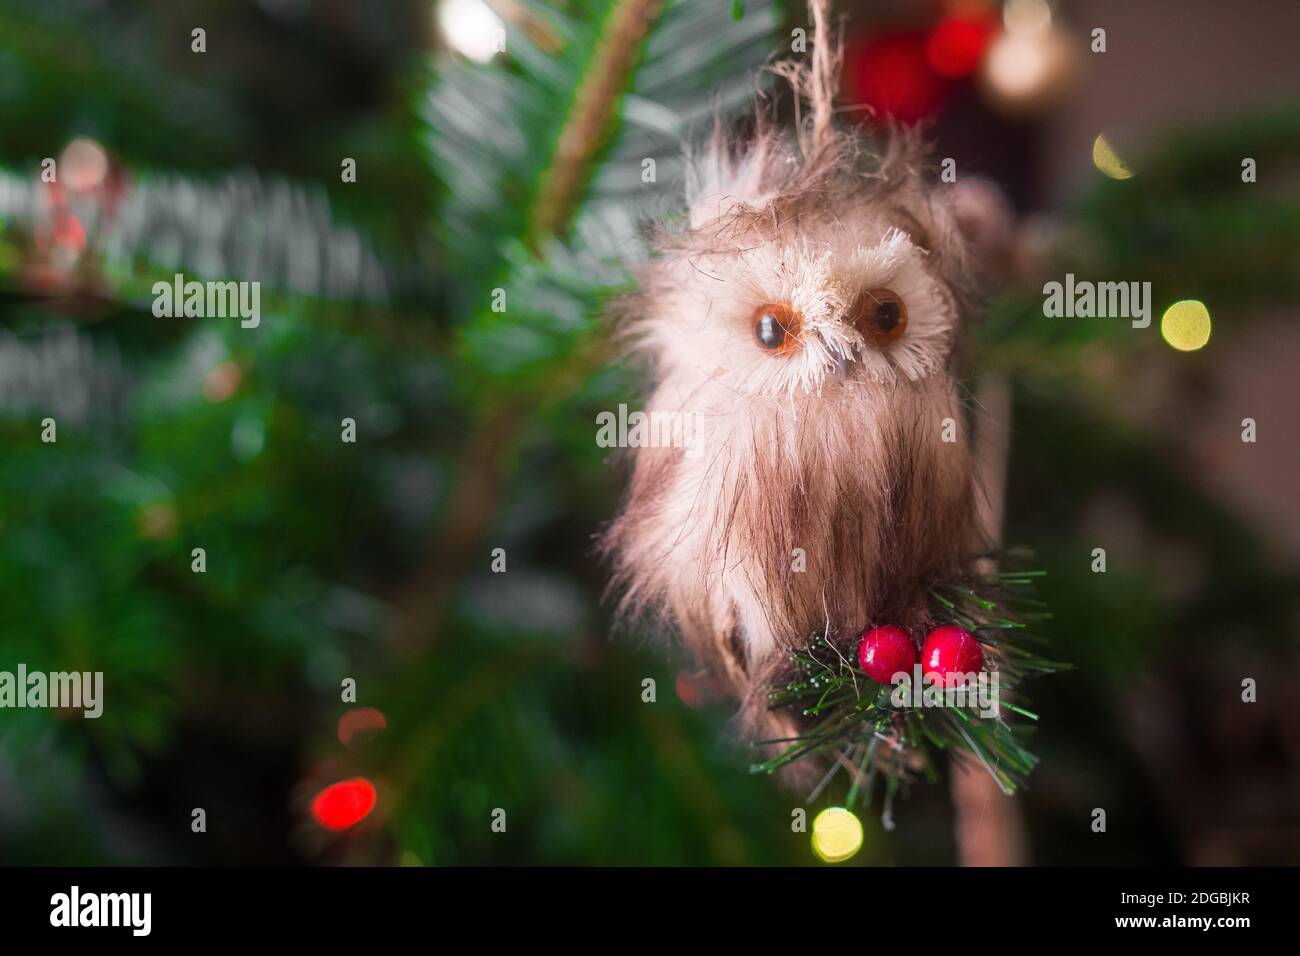 Eule Weihnachtsschmuck. Schöne Nahaufnahme einer kleinen Eule, die auf die Kamera schaute und an einem Weihnachtsbaum hing. Sieht aus wie ein ausgestopftes Tier. Sehr niedlich Stockfoto